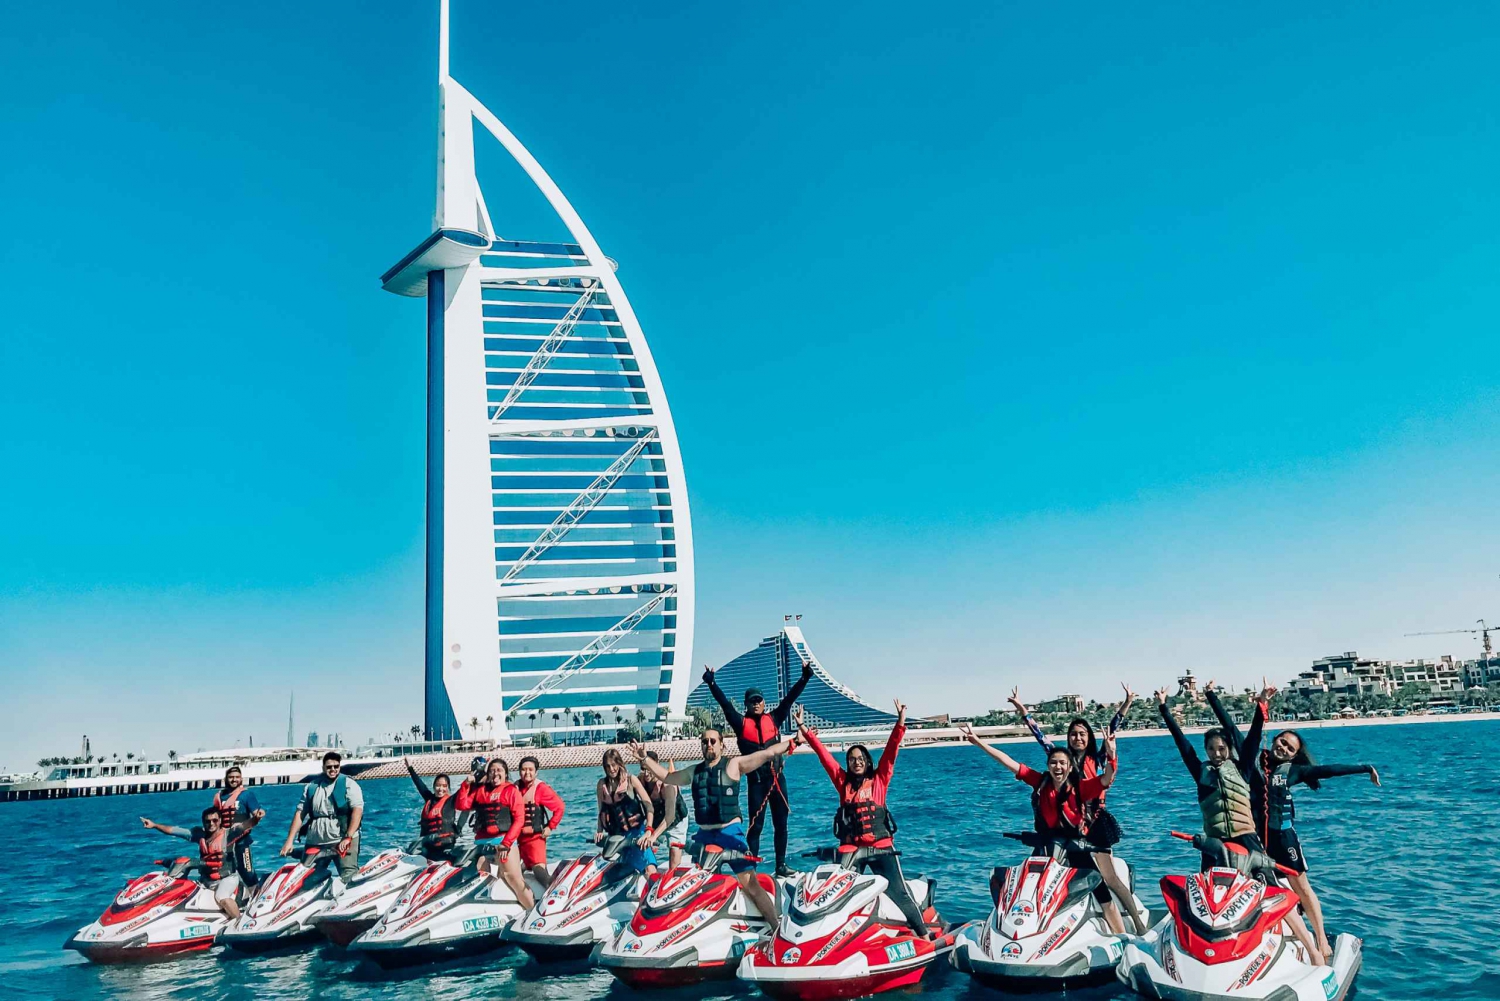 Dubai: 30-Minute Jet Ski Tour to Burj Al Arab